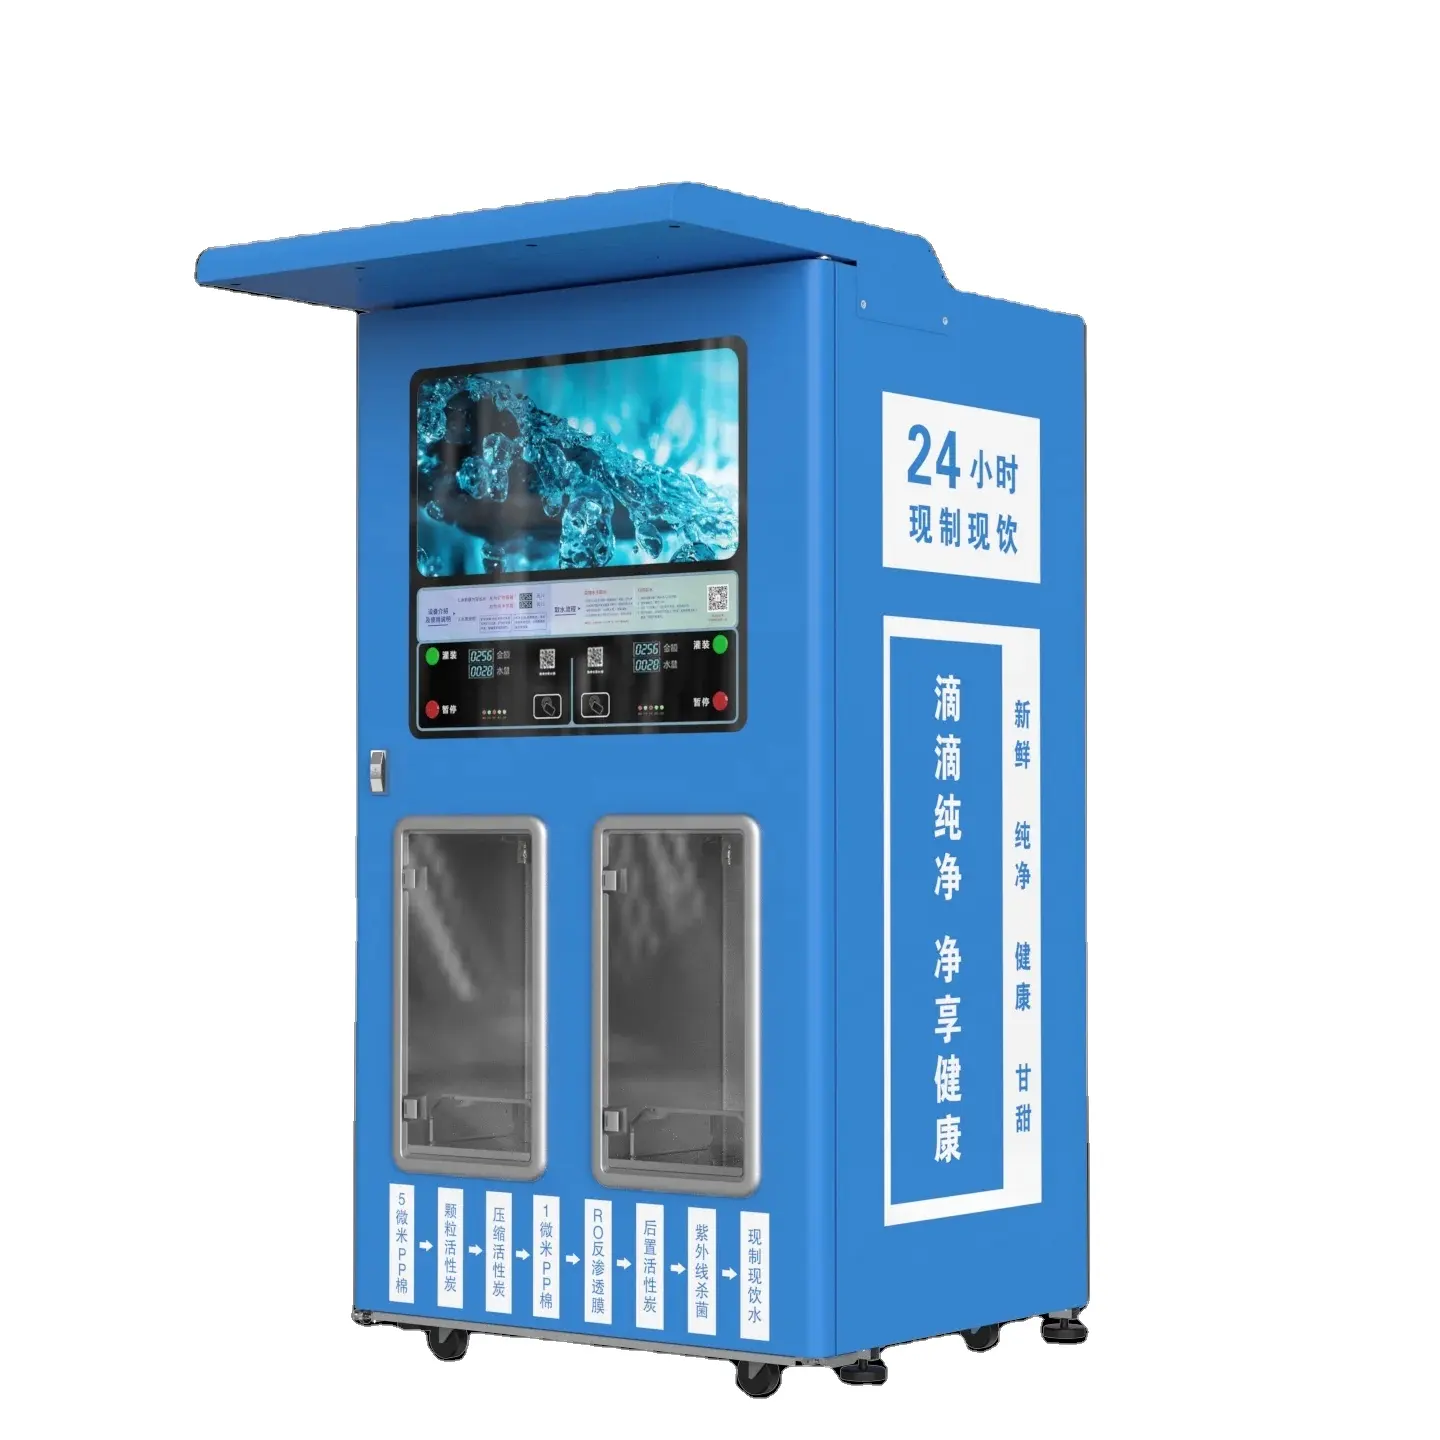 Water Wending Machine, Automatische Waterautomaat Voor Verkoop Gezuiverd Water, Ondersteuning Muntinbrenging, Ondersteuning Kaart Vegen